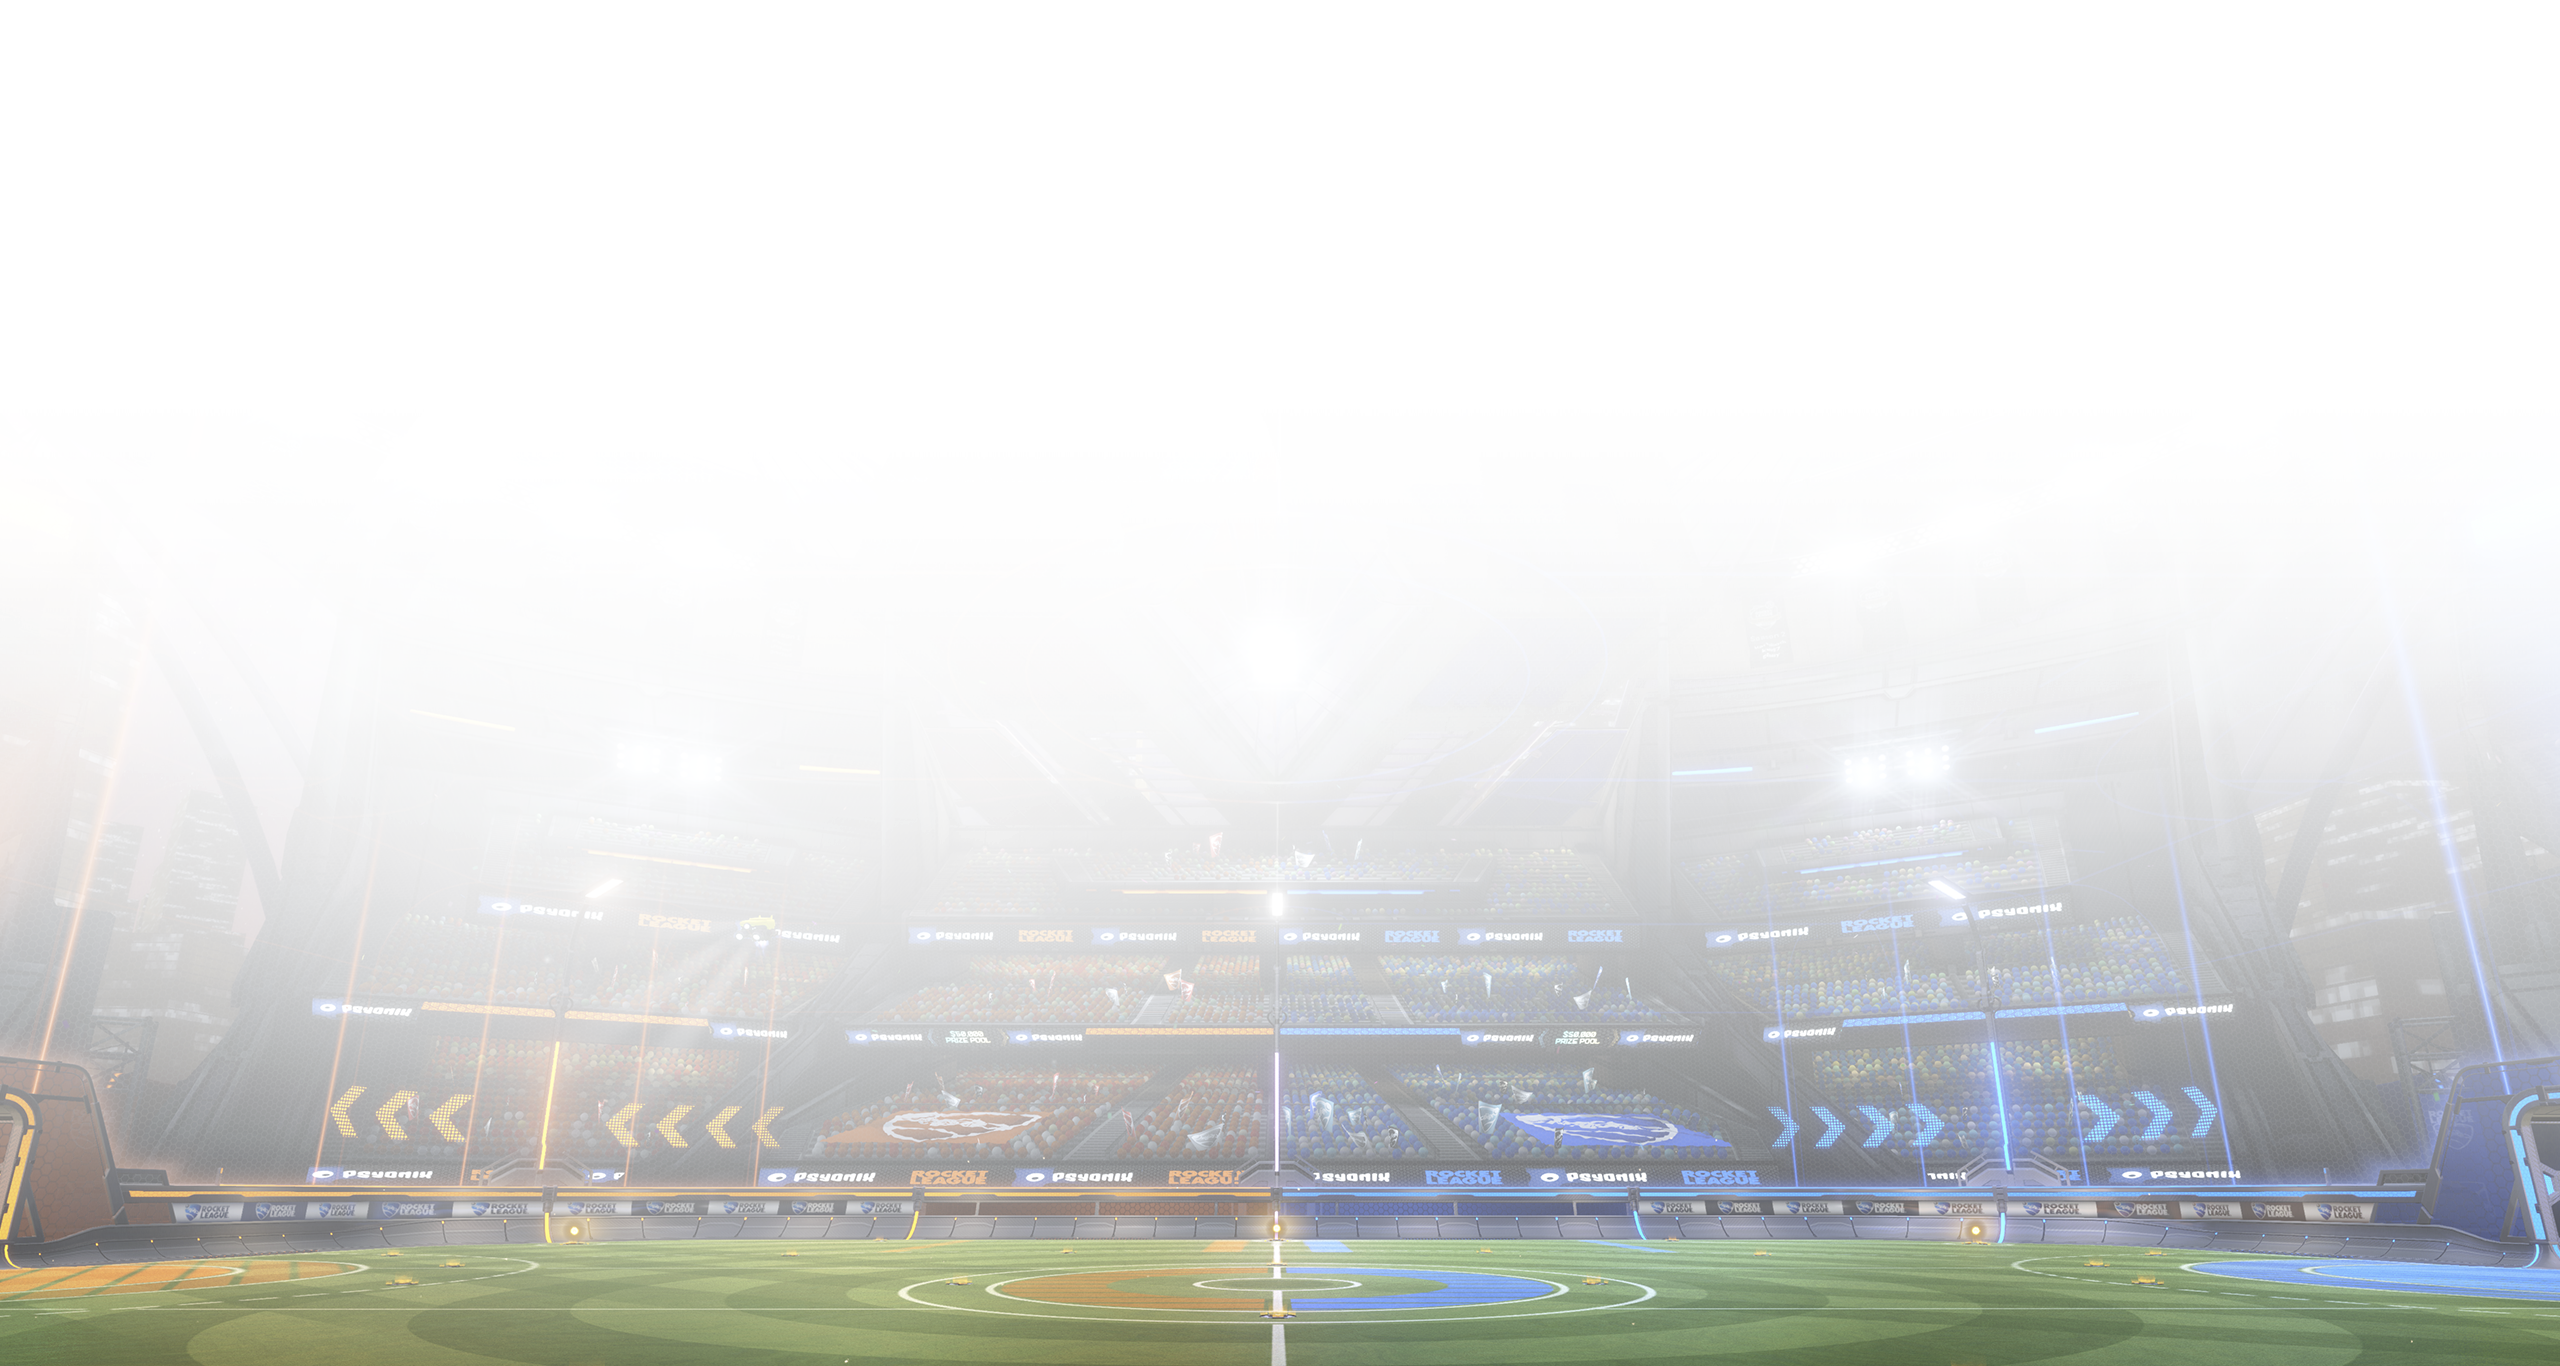 Rocket League - Istantanea della schermata che mostra un campo di gioco circondato da tribune per gli spettatori